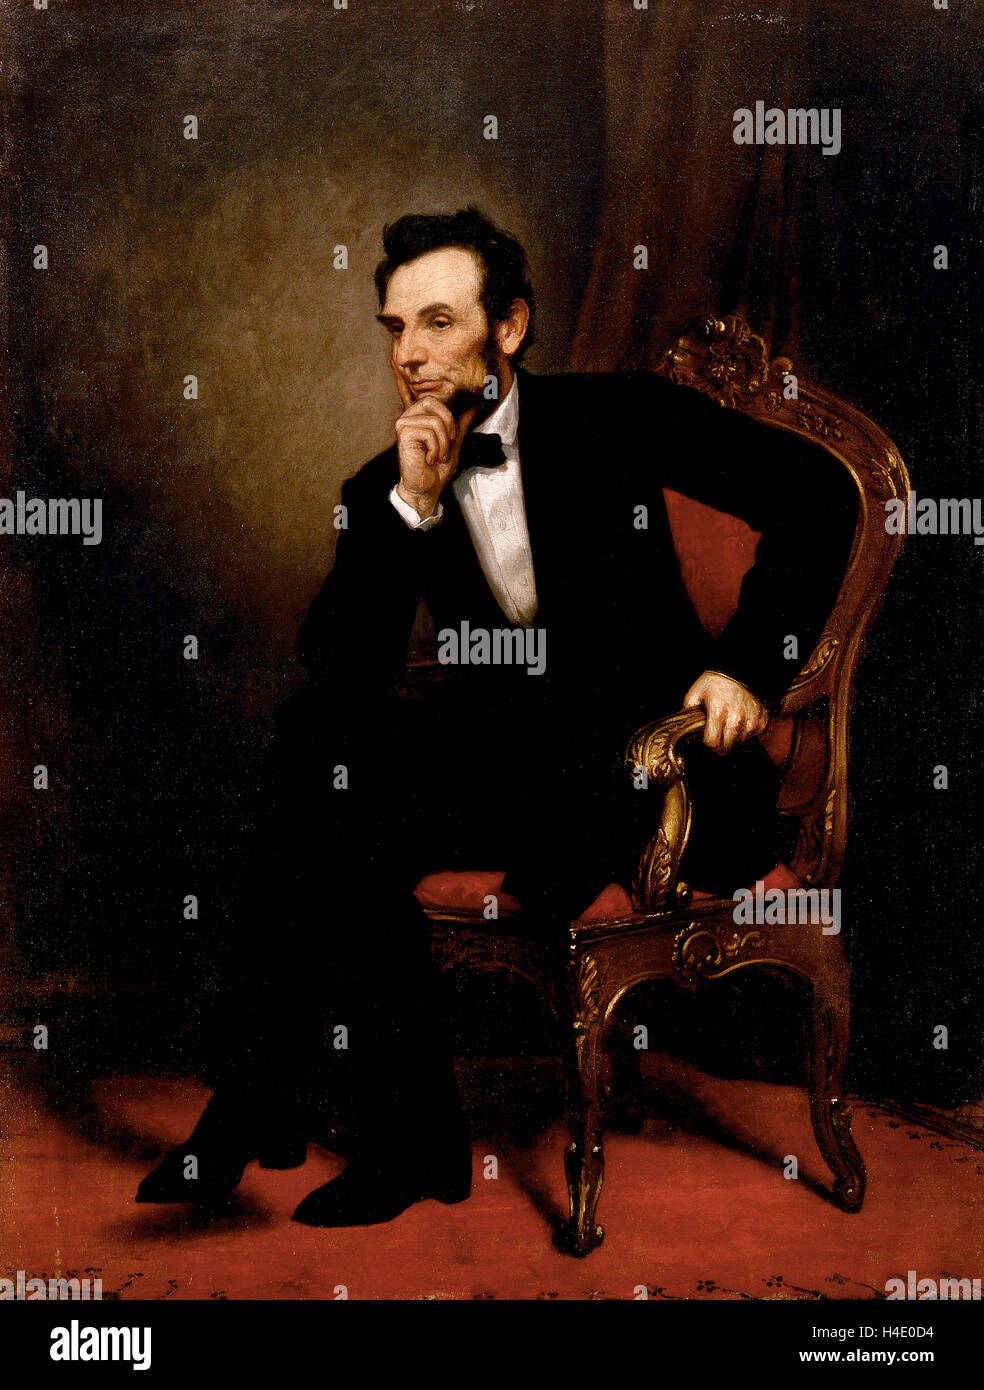 Abraham Lincoln. Portrait du 16e Président des Etats-Unis, Abraham Lincoln (1809-1865) par George Peter Alexander Healy, 1869 Banque D'Images